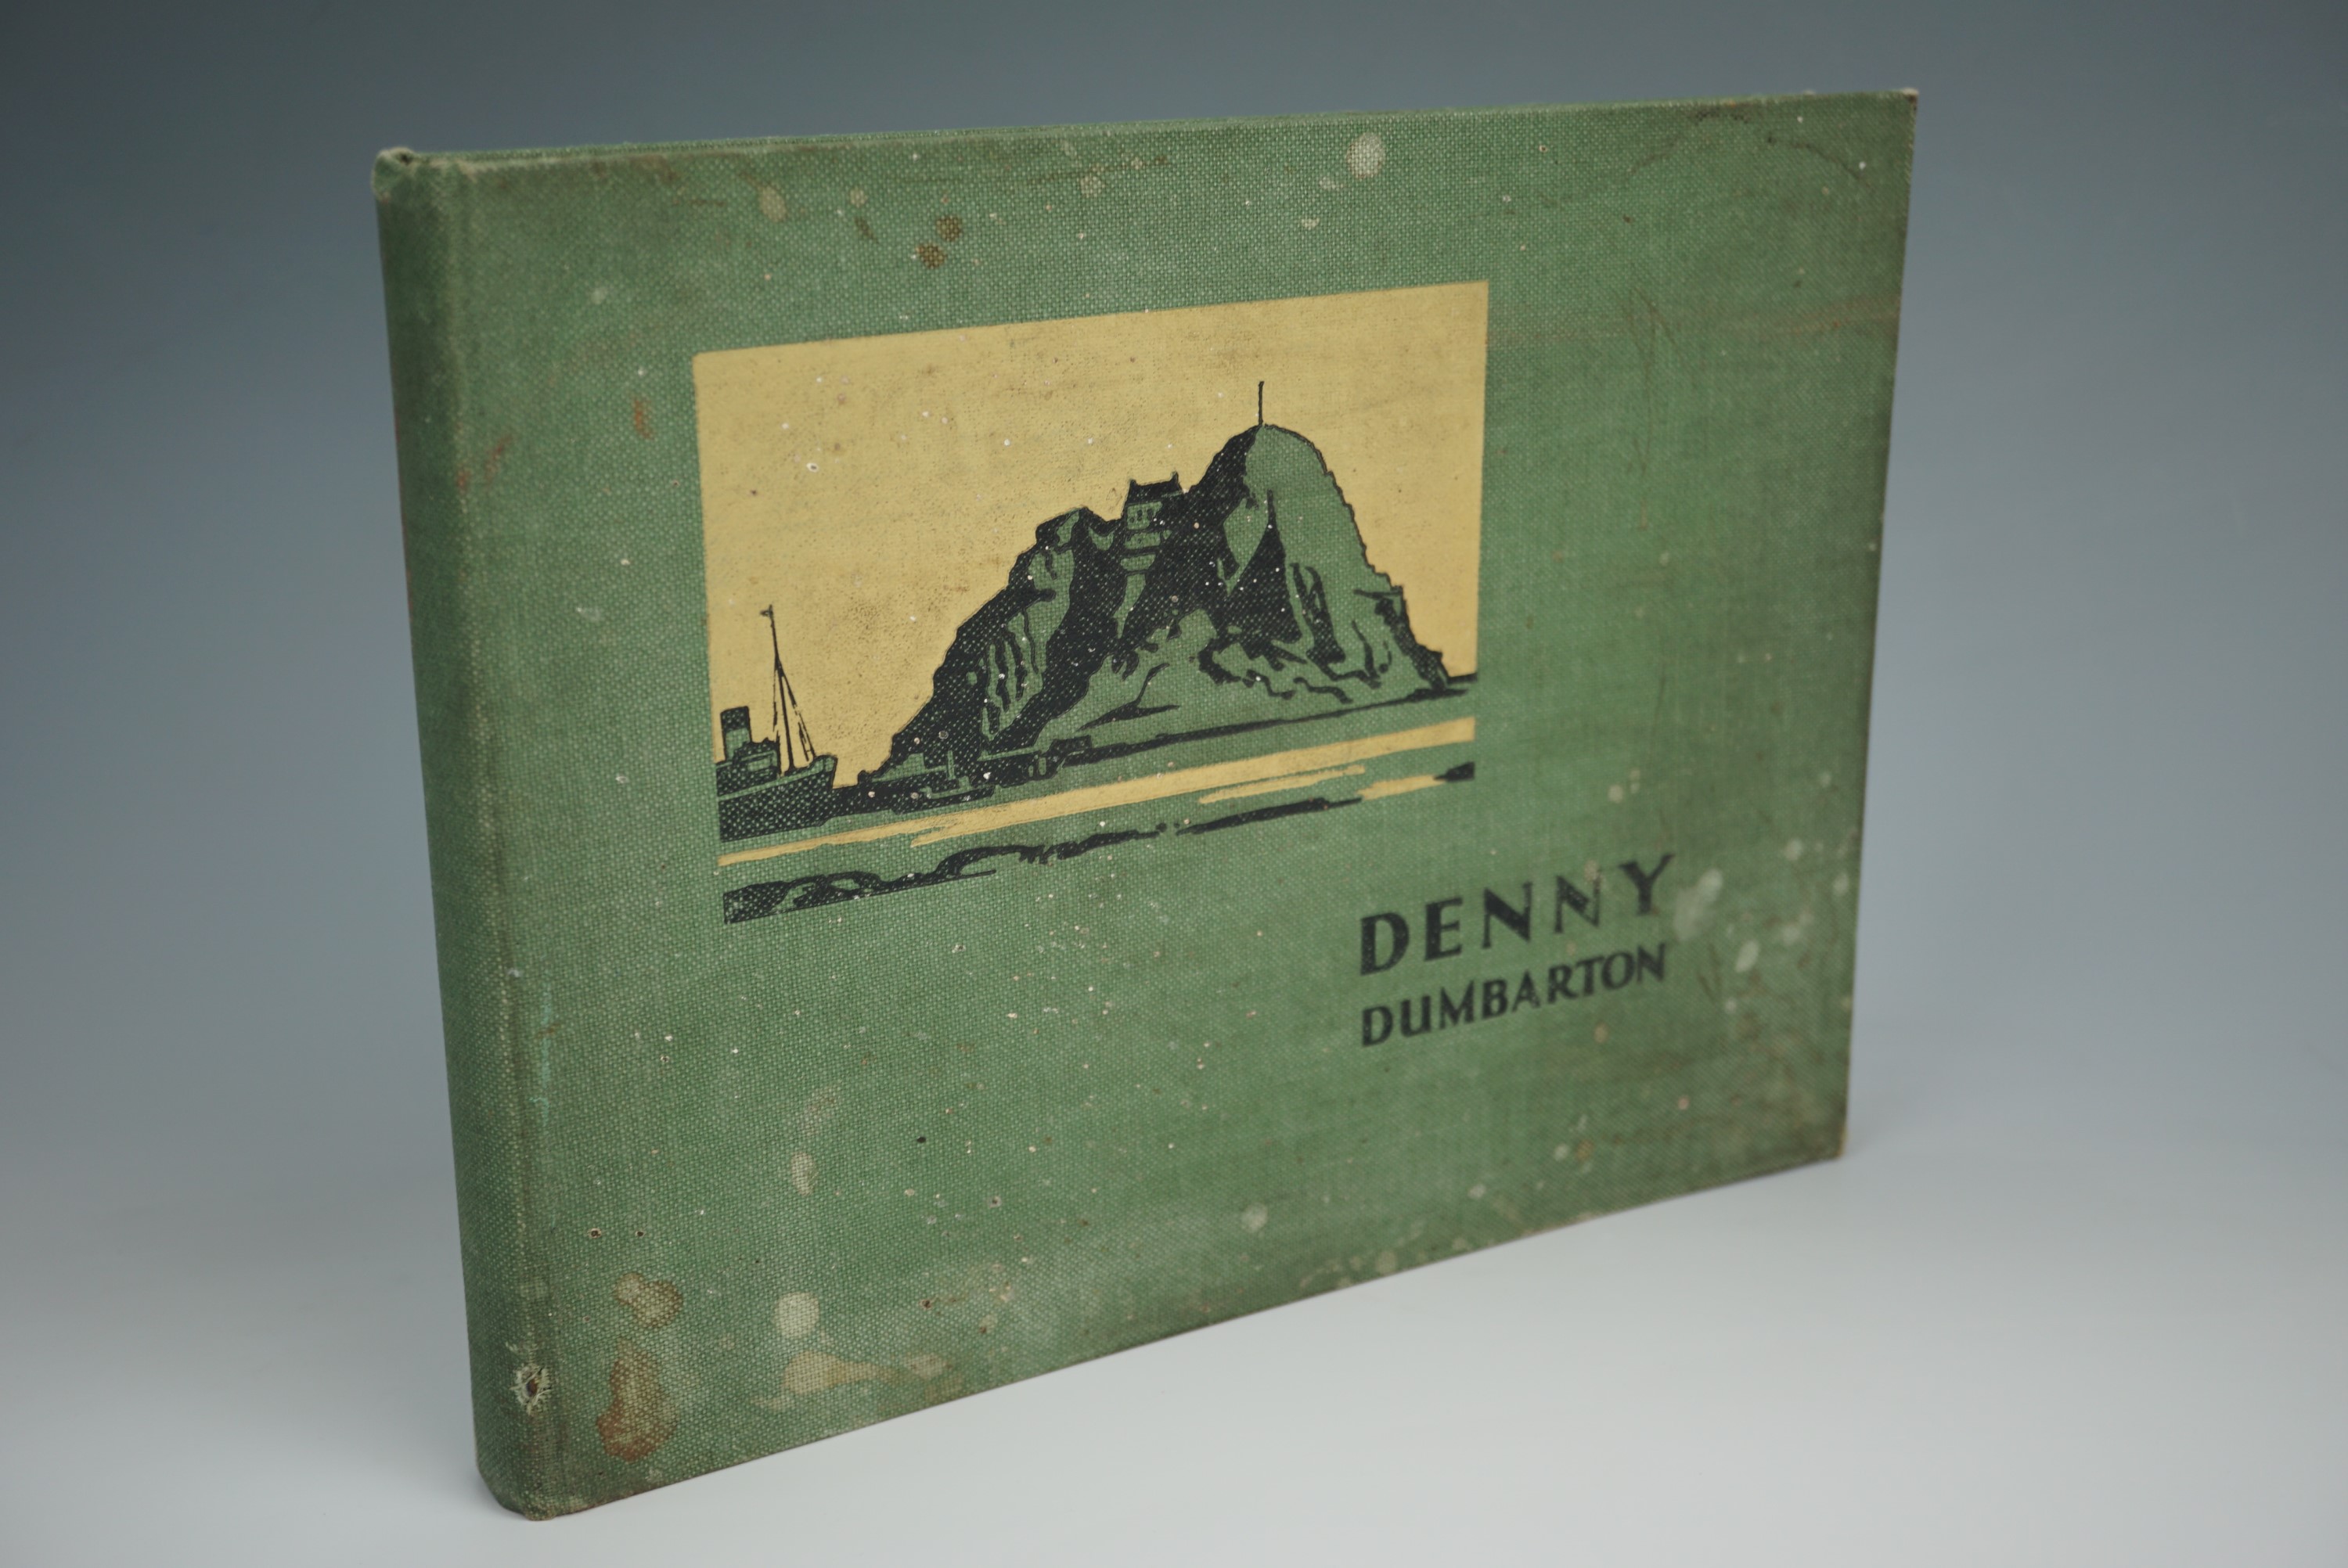 [Scottish shipbuilding] "Denny, Dumbarton, 1844 - 1932", William Denny & Brothers, Ltd, 1932, 113pp,